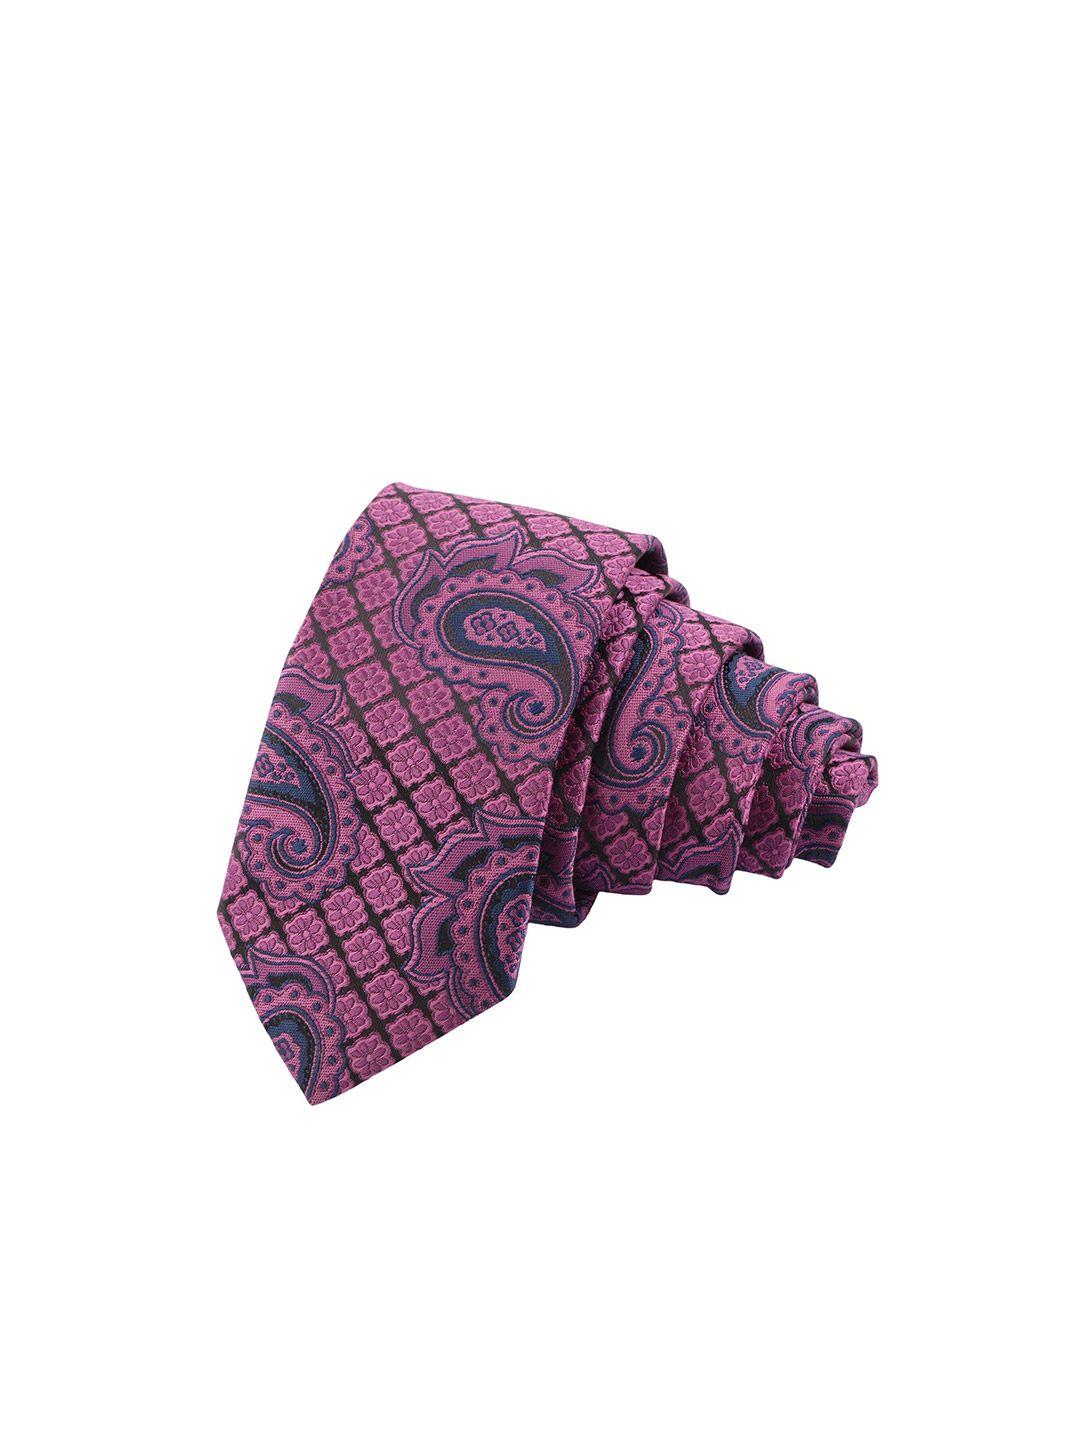 alvaro castagnino men purple & black woven design skinny tie